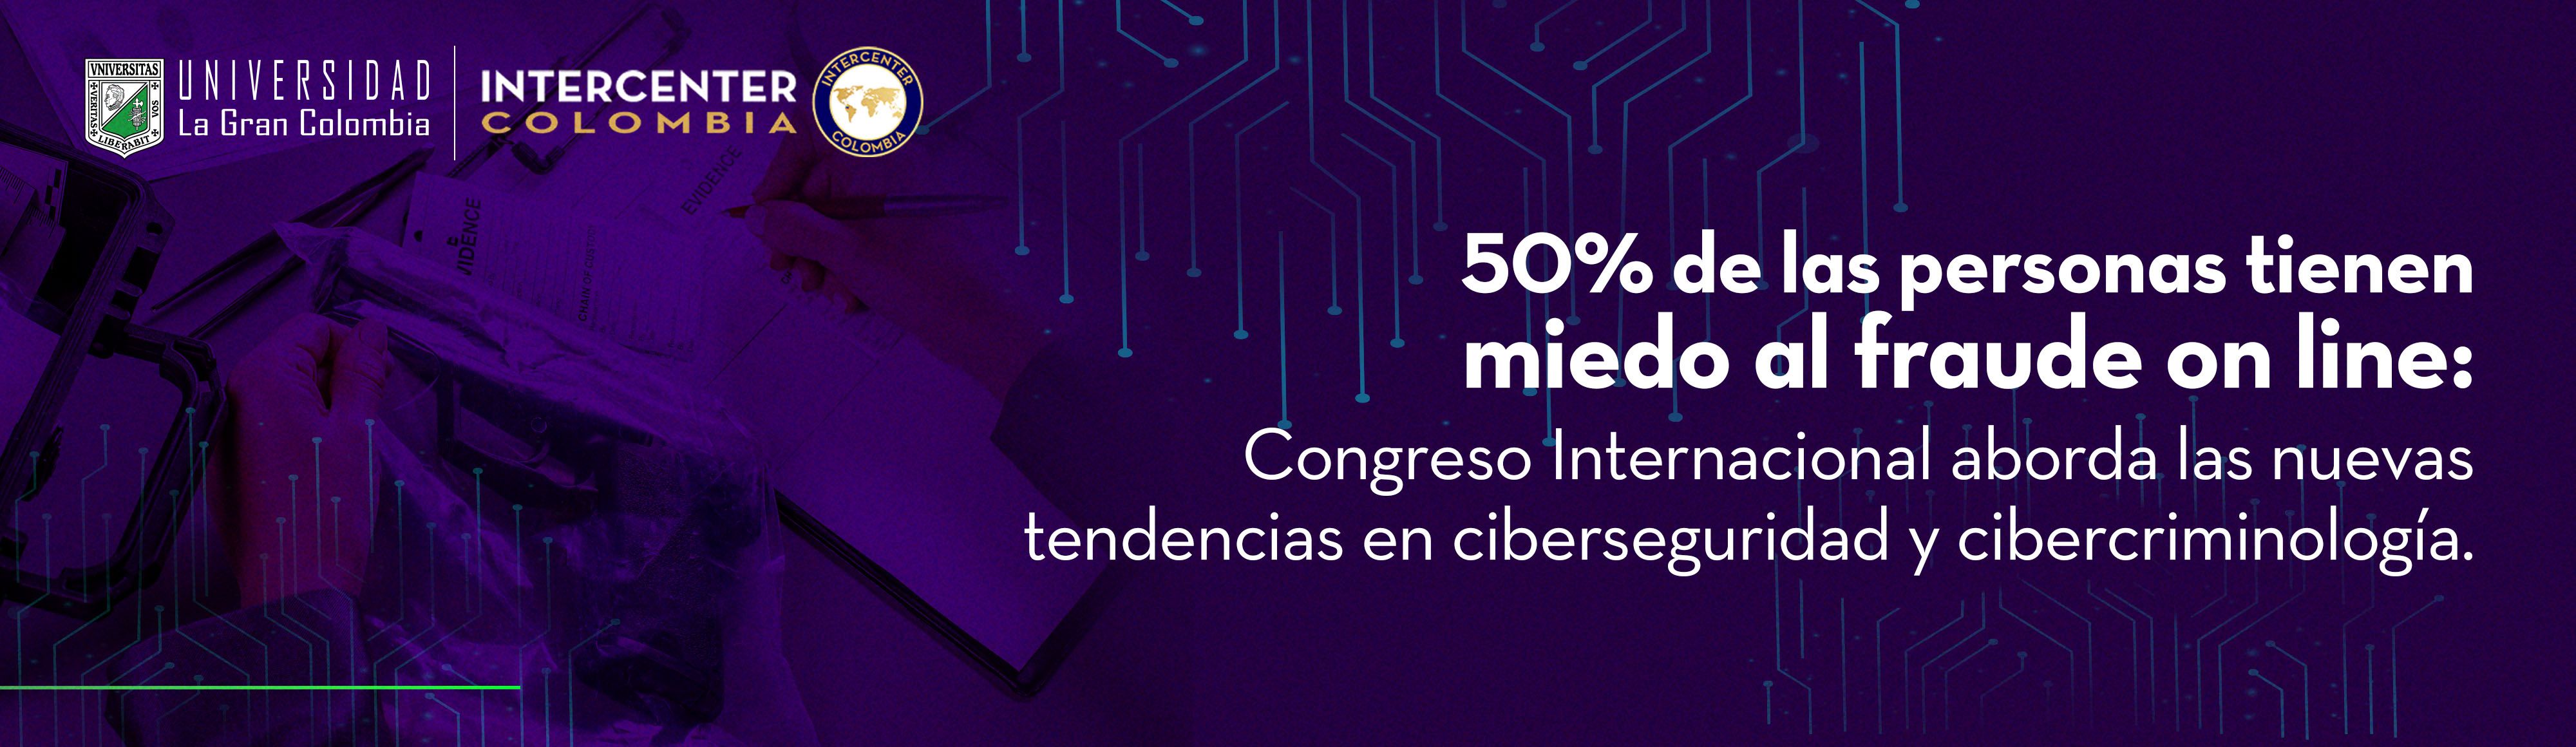 50% de las personas tienen miedo al fraude on line: Congreso Internacional aborda las nuevas tendencias en ciberseguridad y cibercriminología